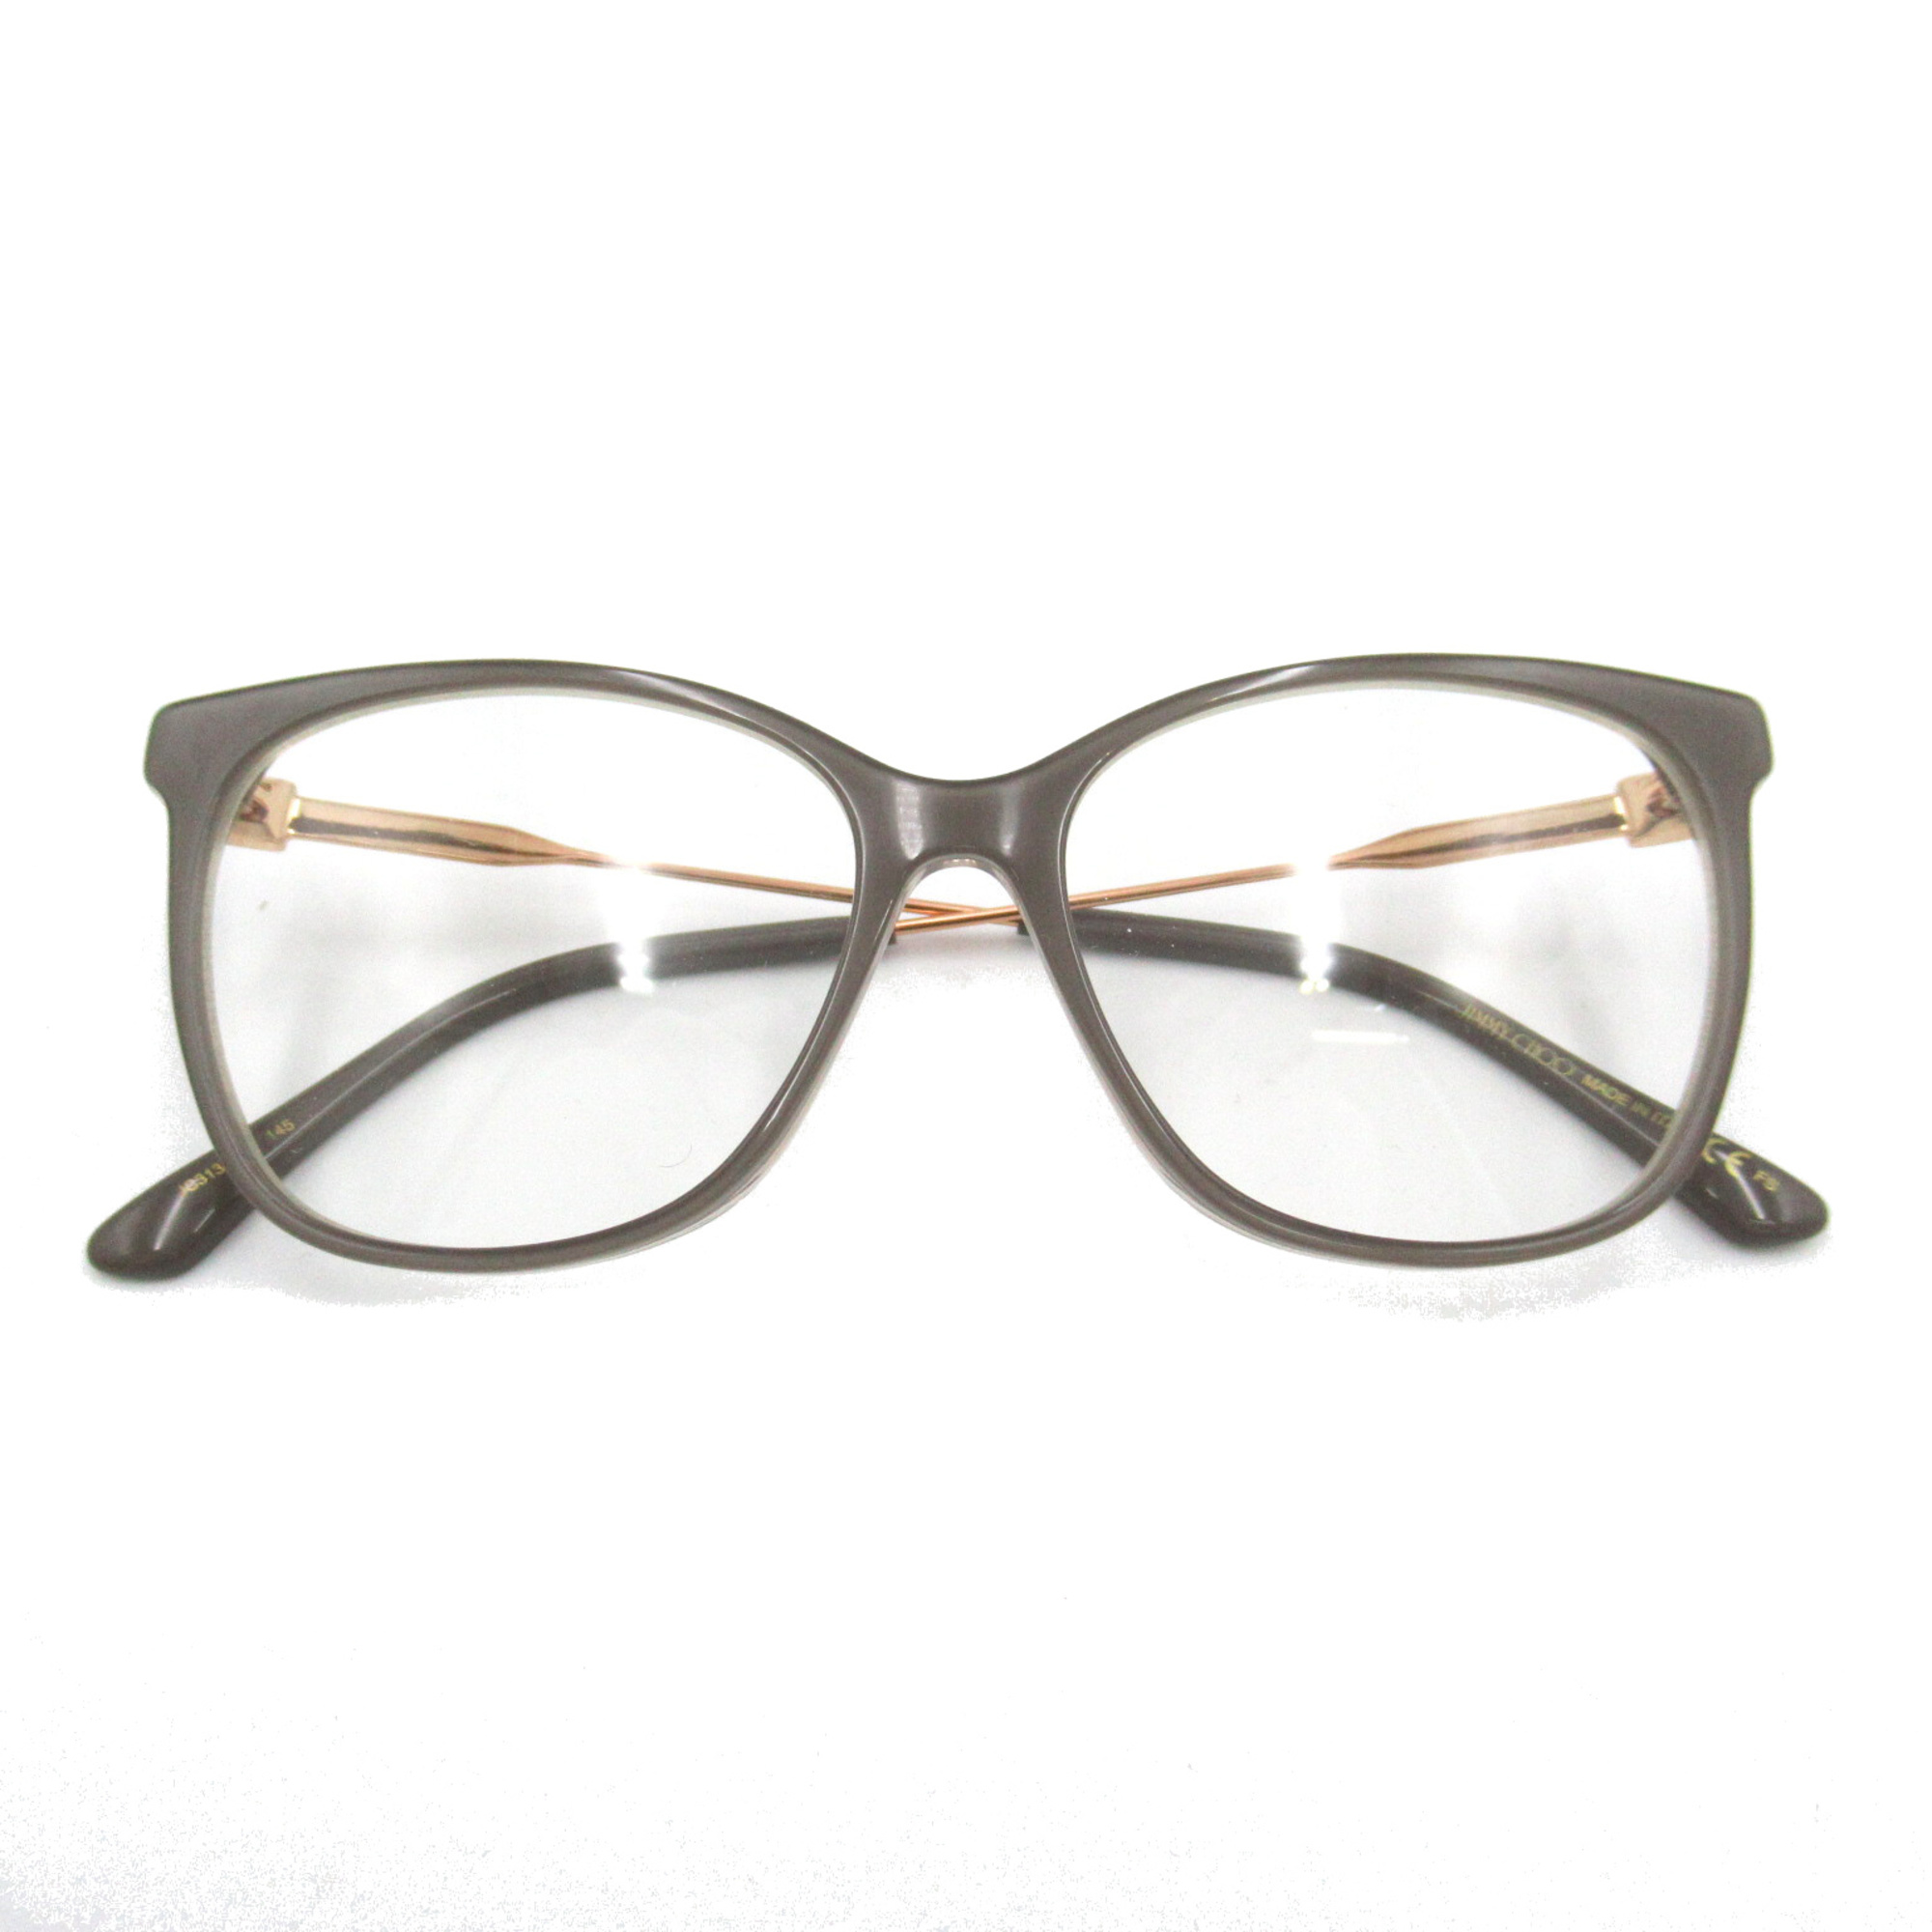 JIMMY CHOO Date Glasses Glasses Frame Gray Gold Stainless Steel Plastic 313 6RI(53)